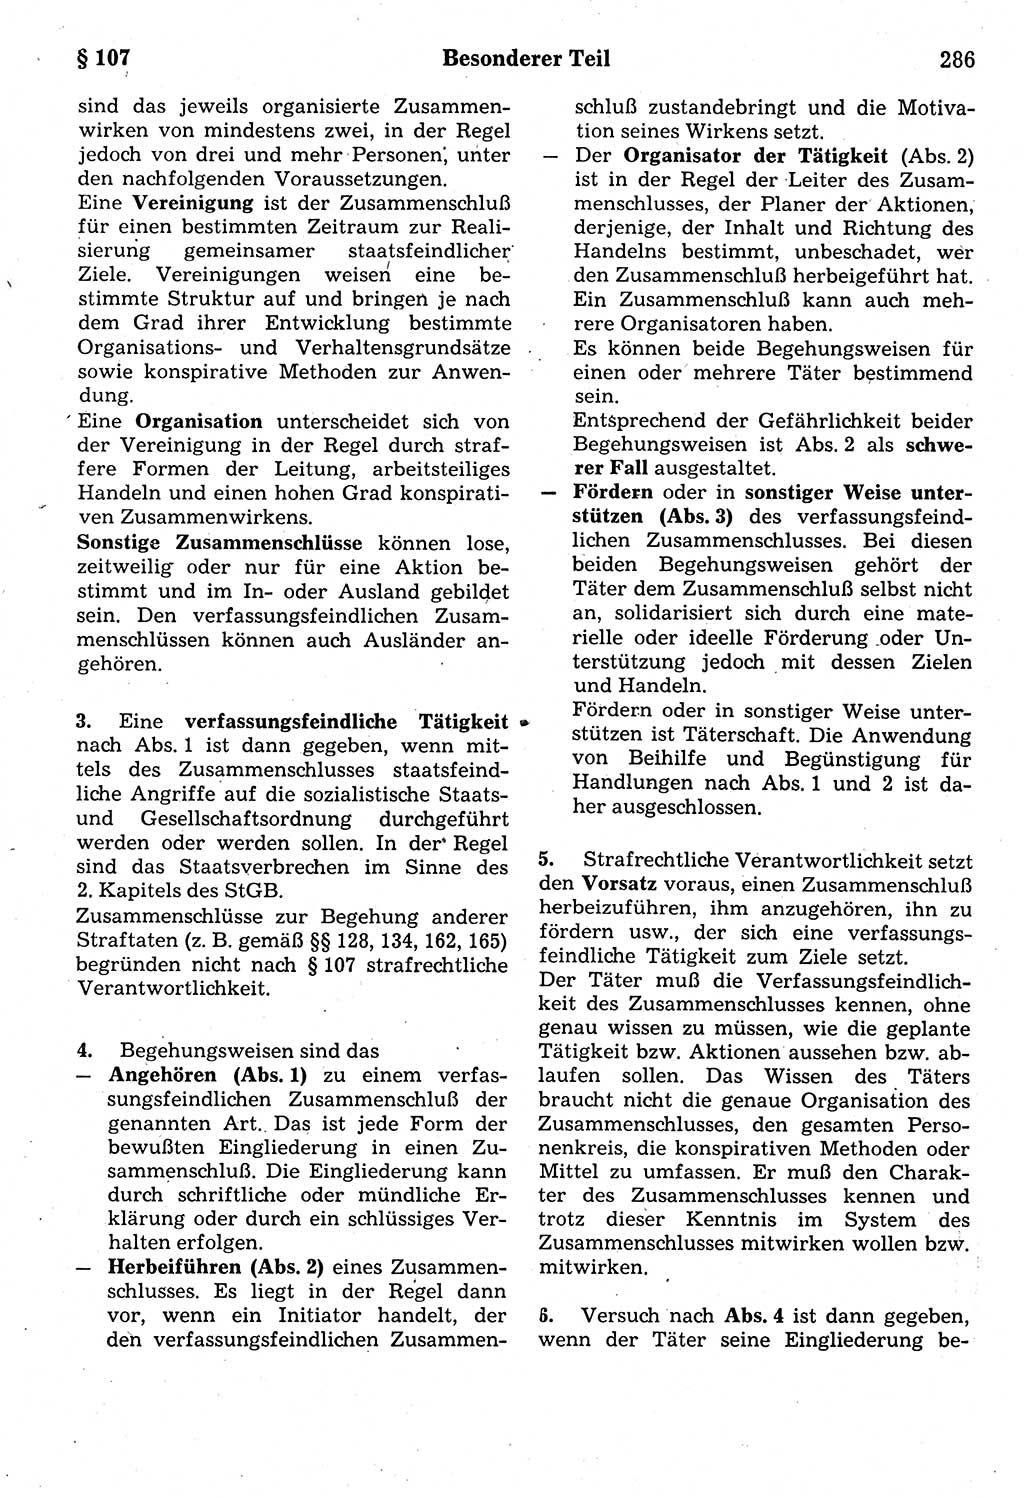 Strafrecht der Deutschen Demokratischen Republik (DDR), Kommentar zum Strafgesetzbuch (StGB) 1987, Seite 286 (Strafr. DDR Komm. StGB 1987, S. 286)